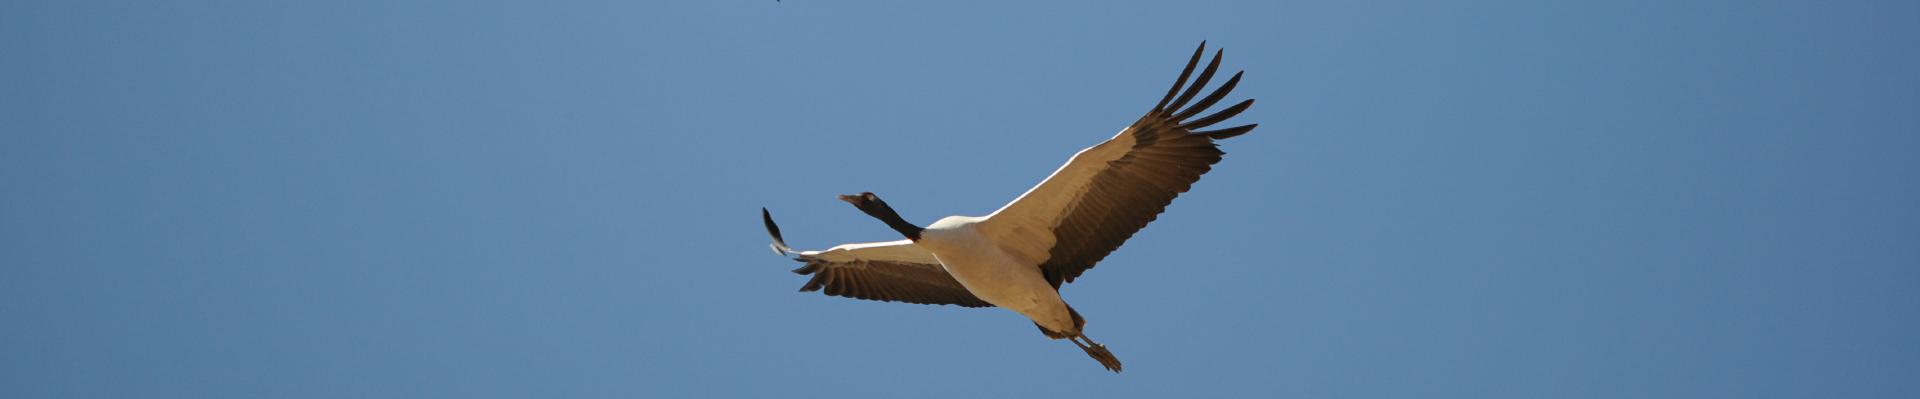 black necked crane